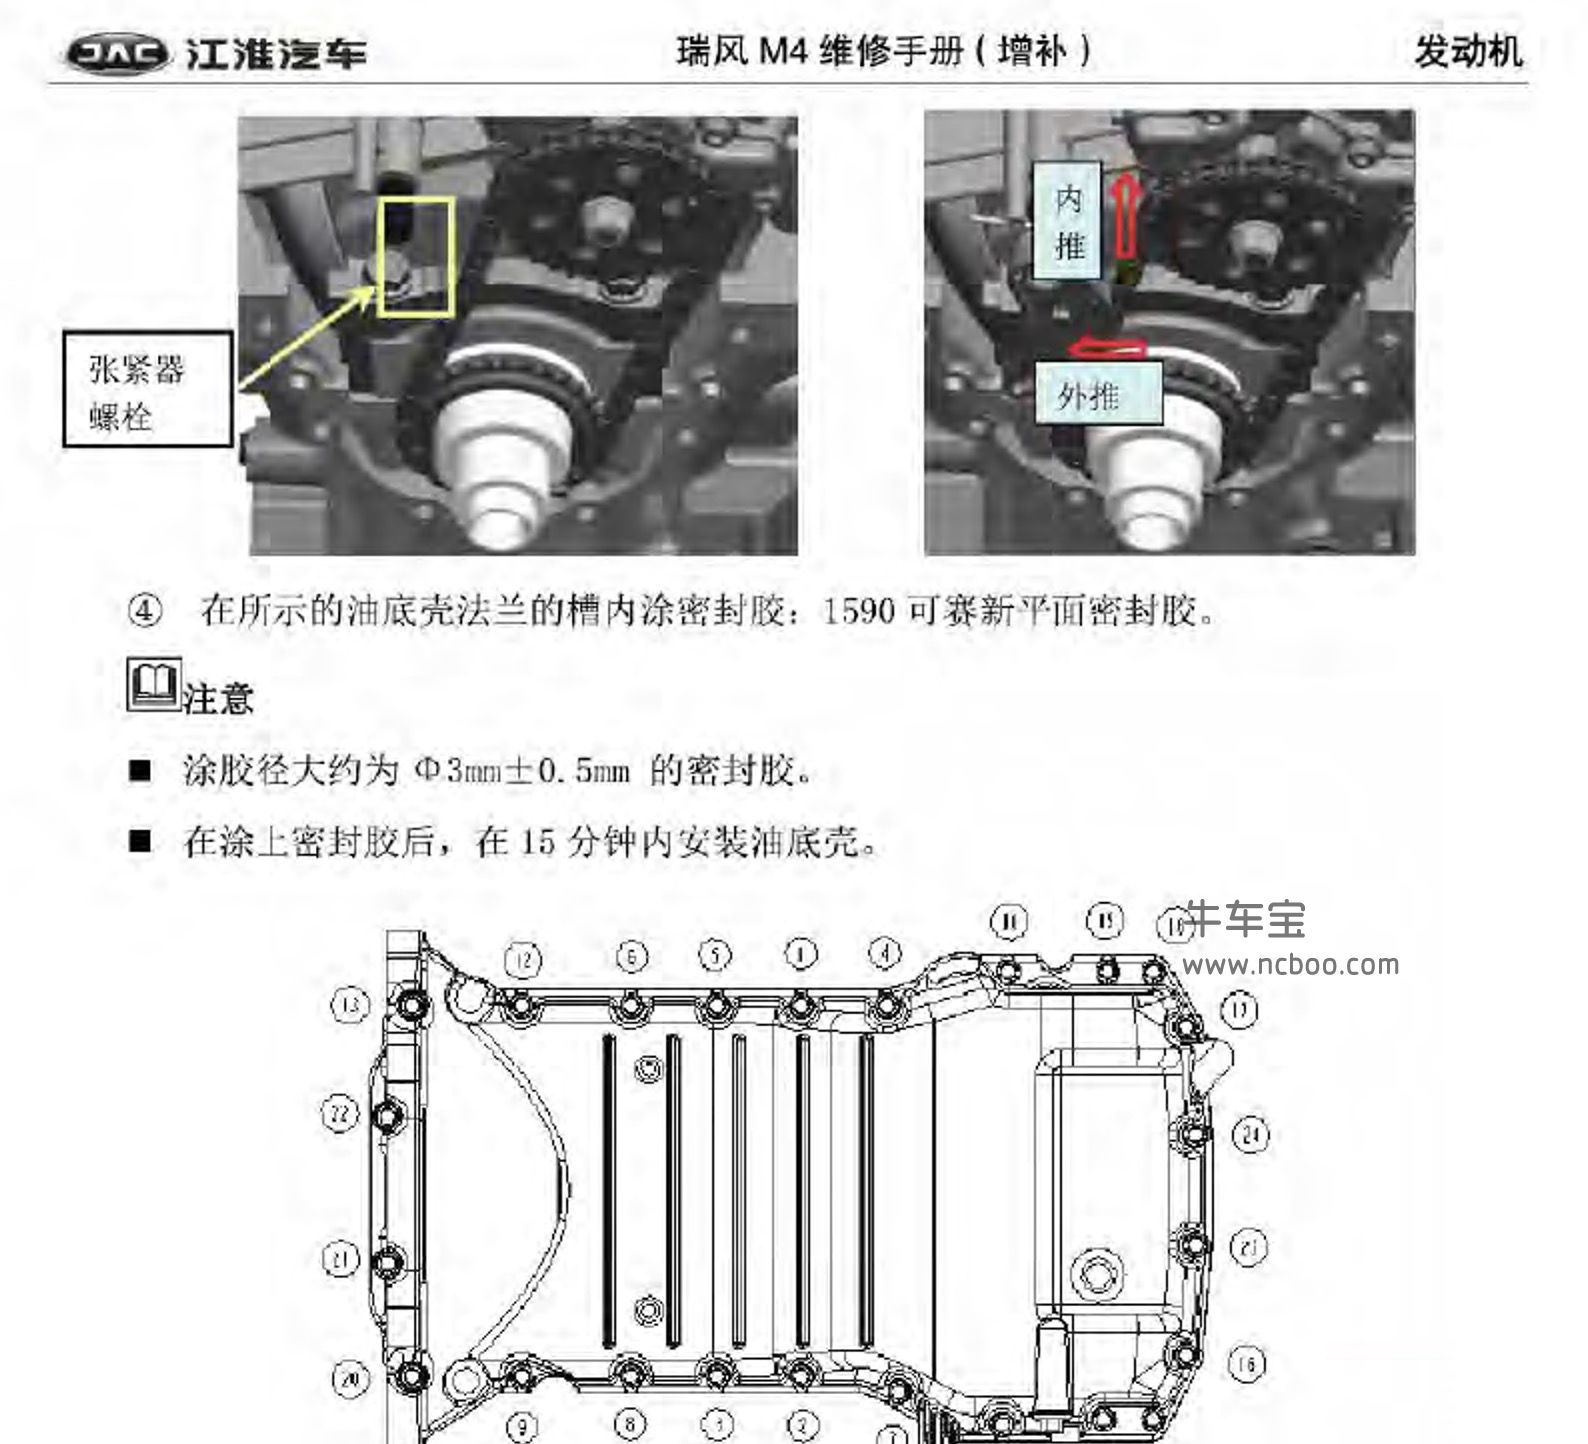 2018-2019款江淮瑞风M4原厂维修手册和电路图下载